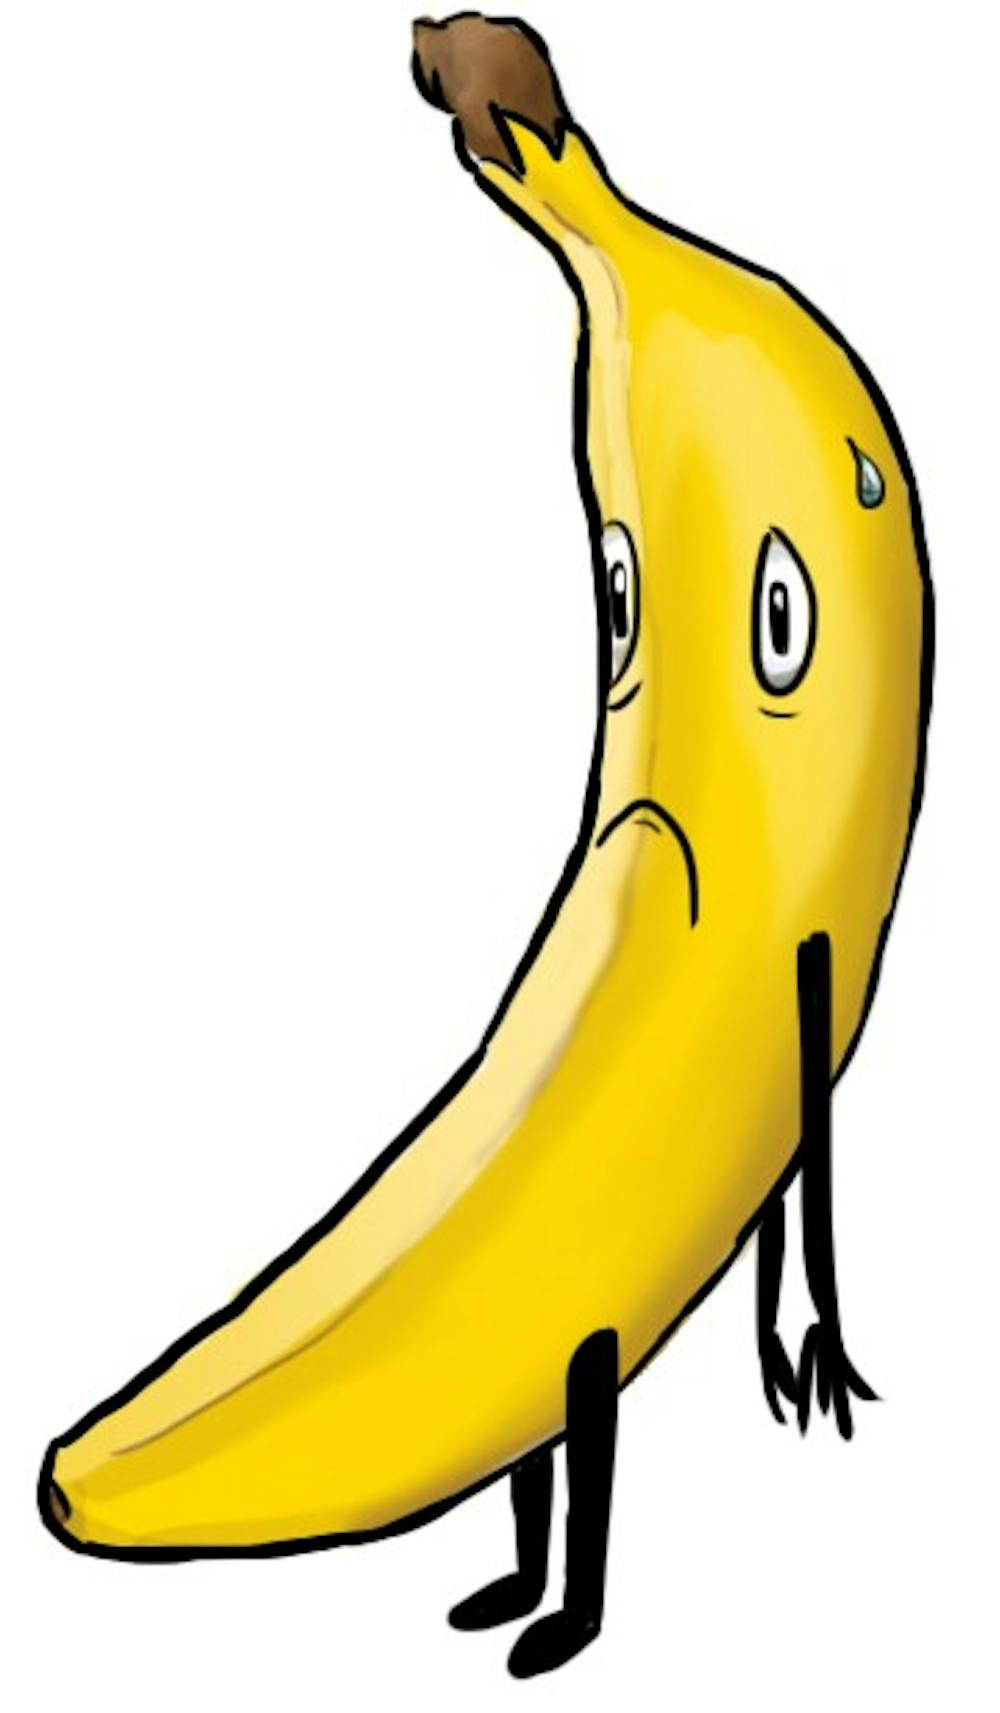 Sad banana